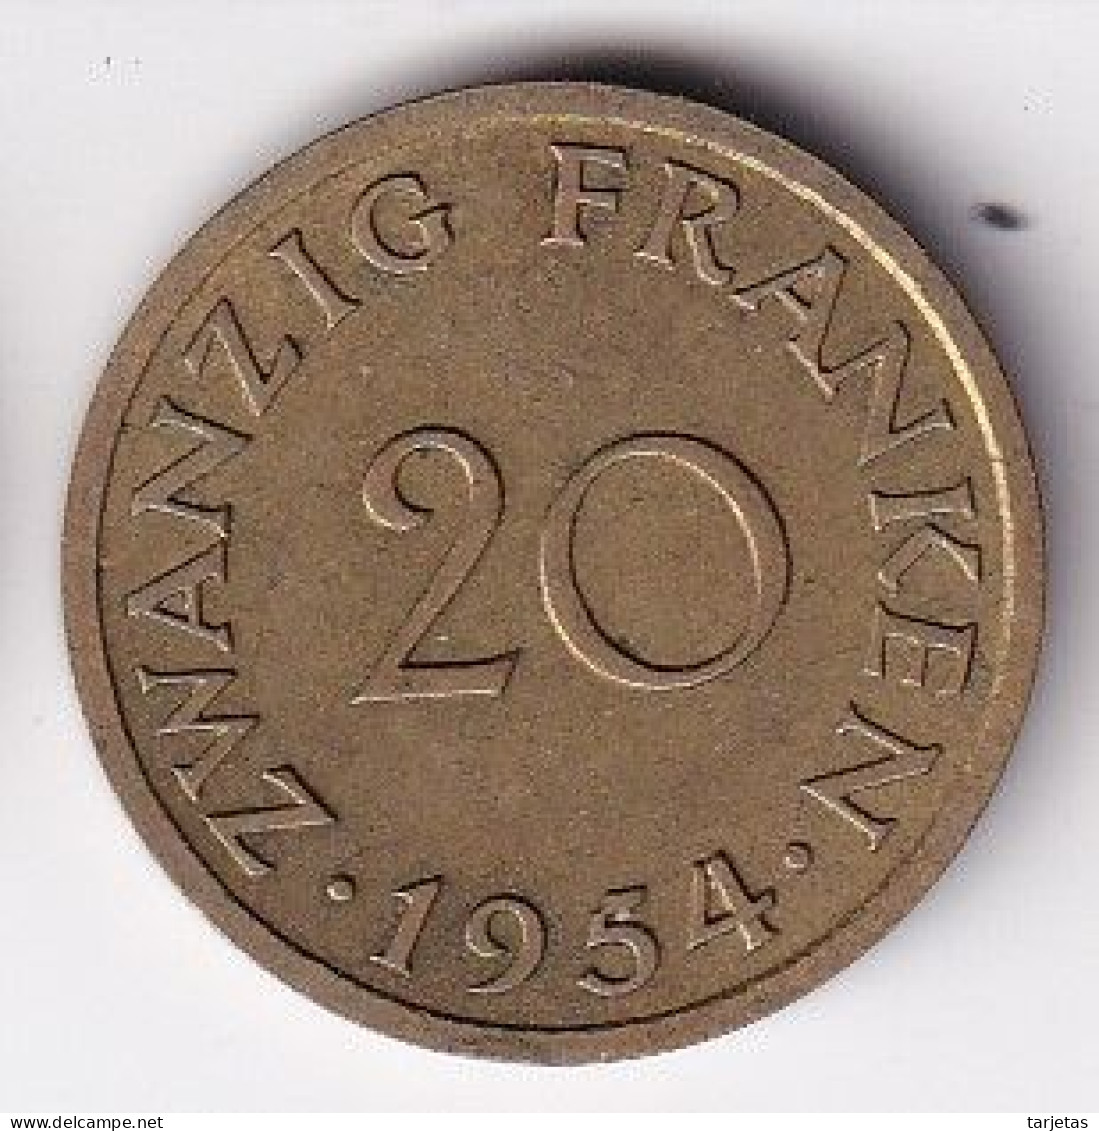 MONEDA DE SARRE DE 20 FRANCS DEL AÑO 1954 - 20 Francos